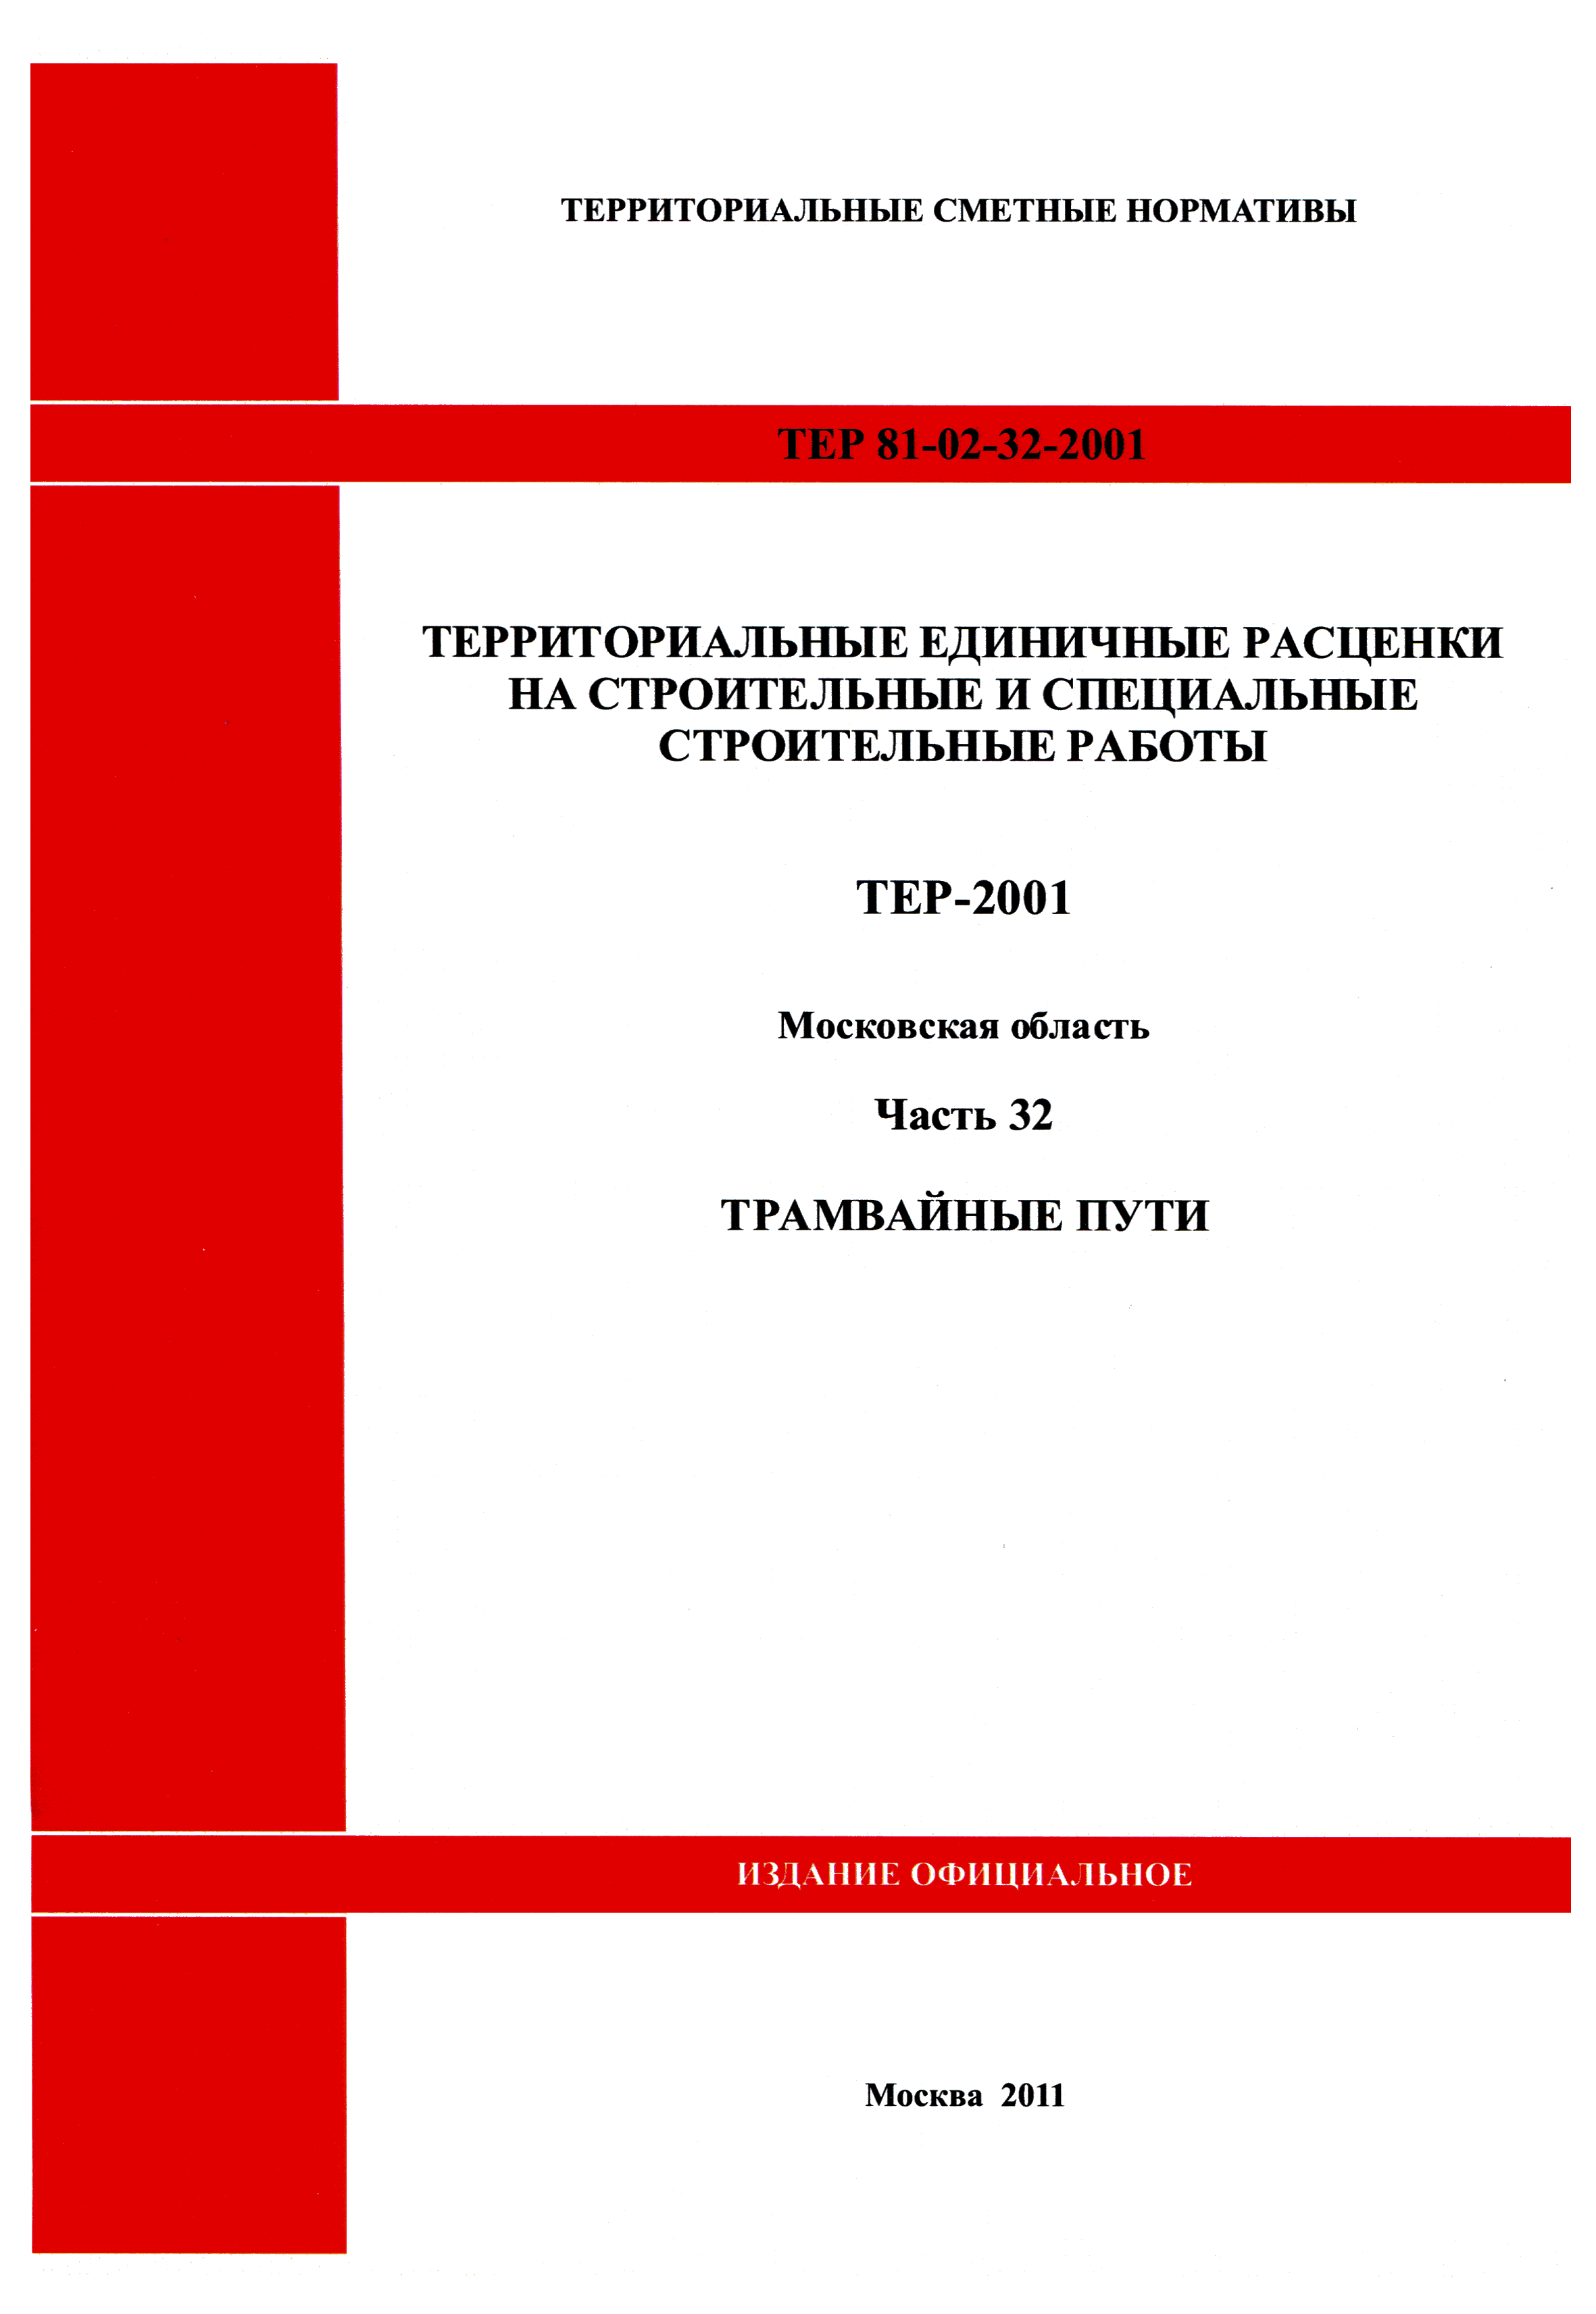 ТЕР 32-2001 Московской области